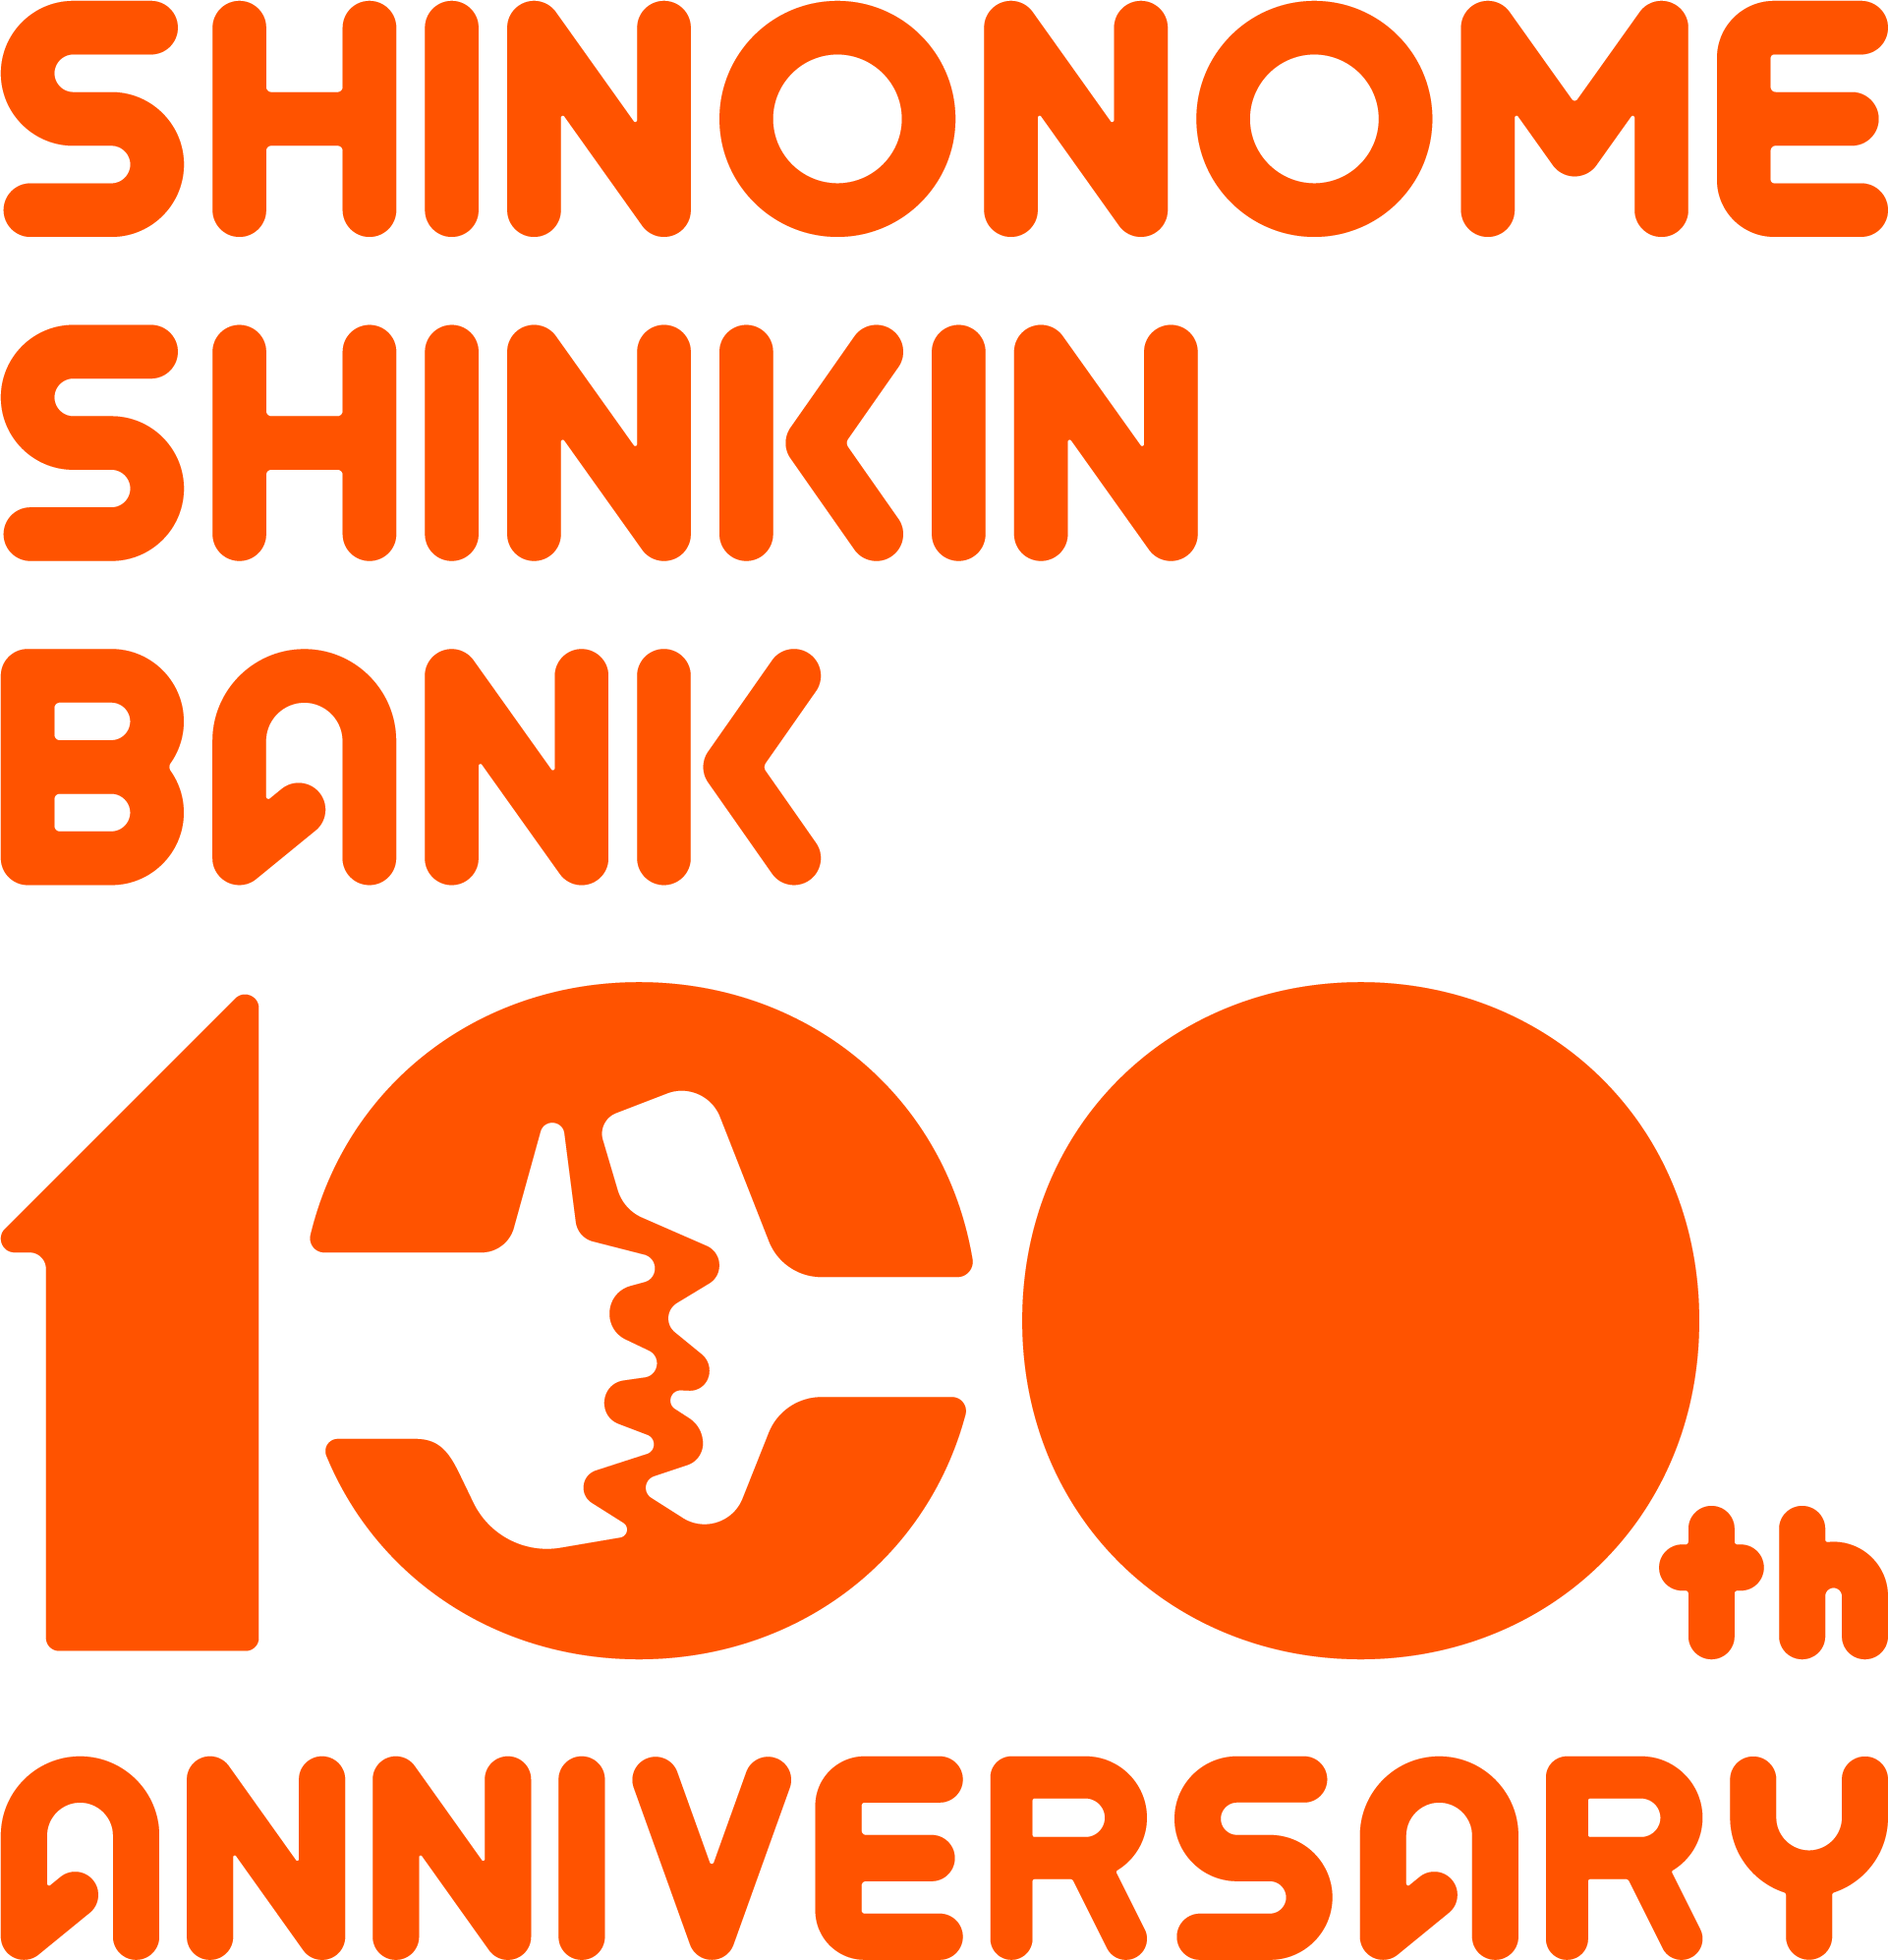 Shinonome Shinkin Bank 100th Anniversary